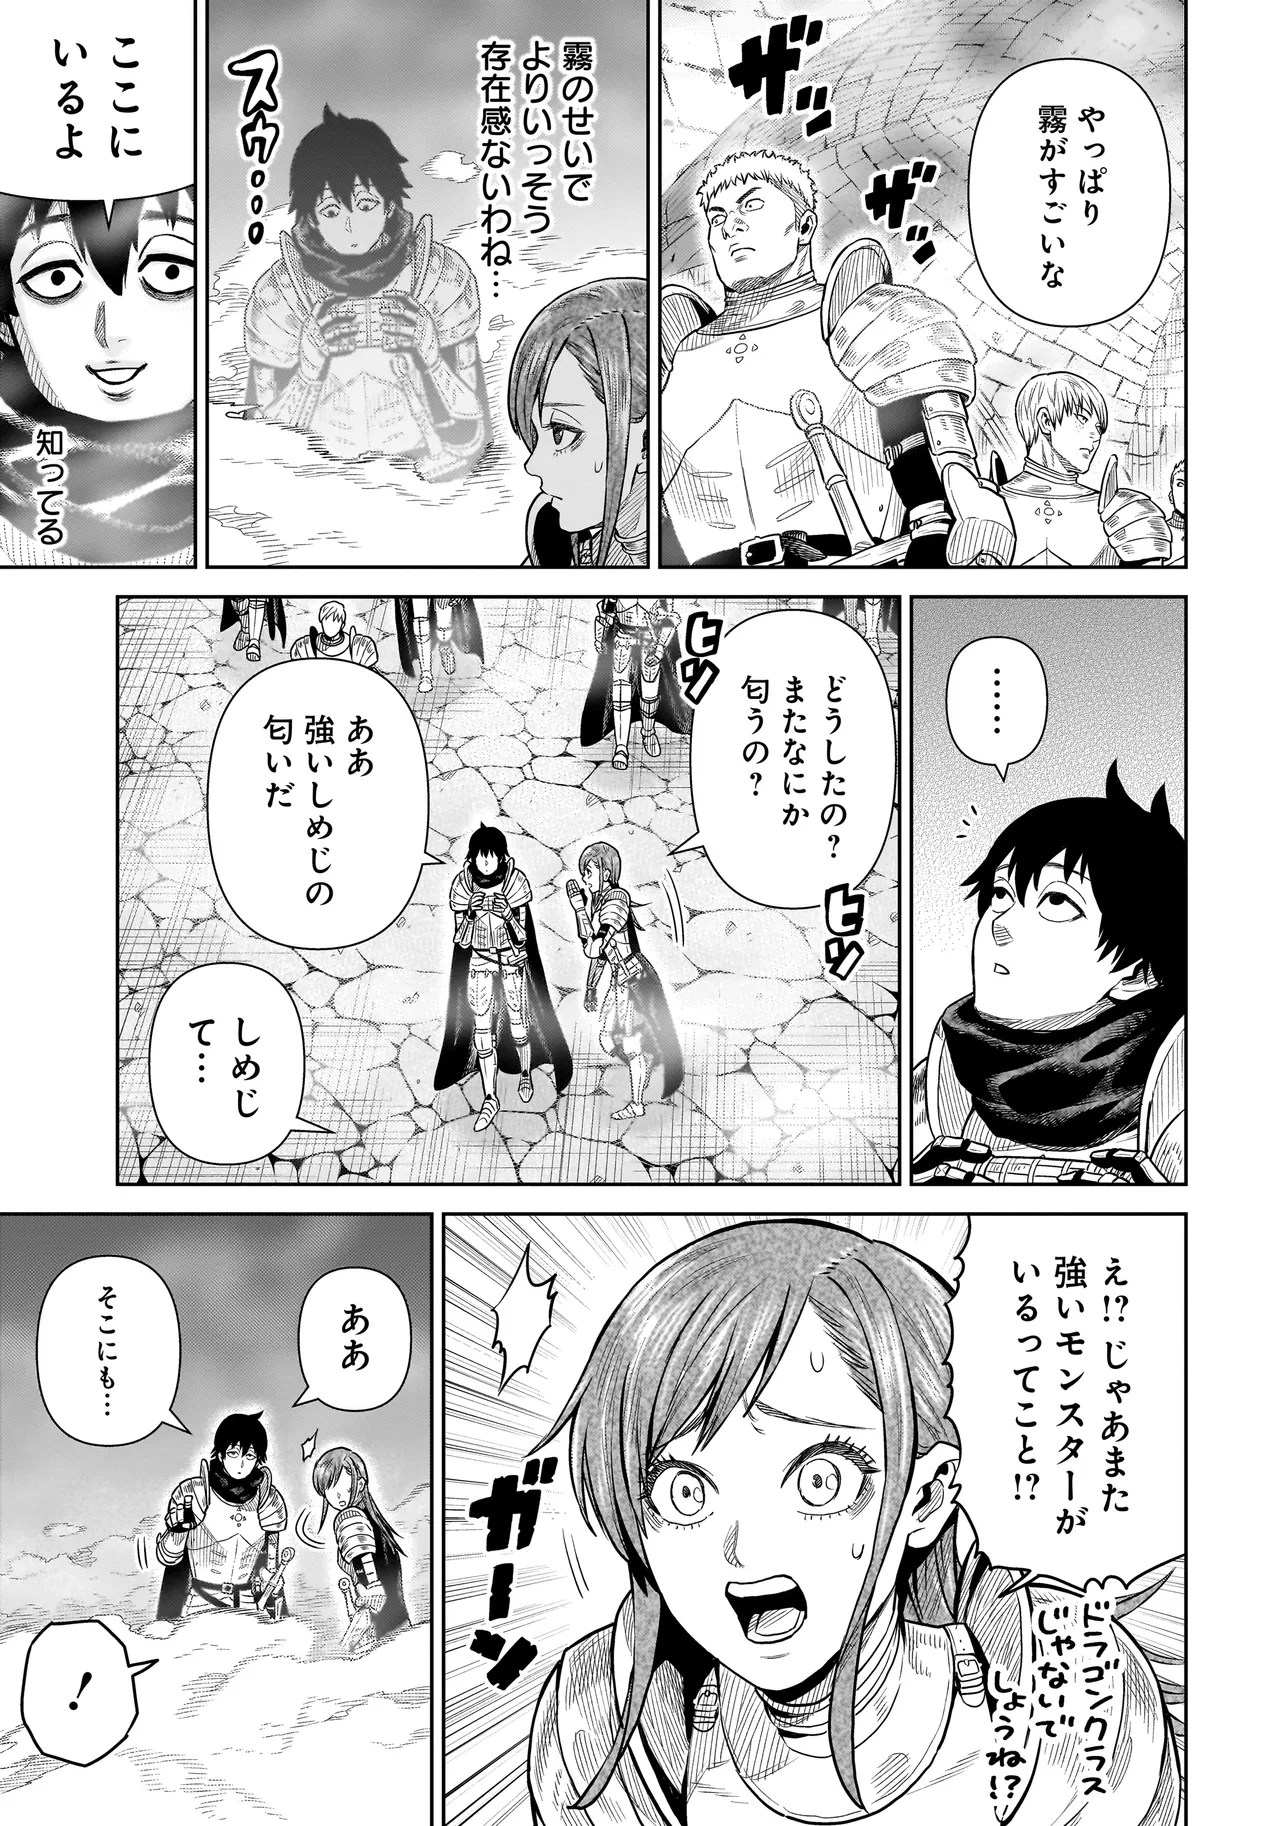 Ninja no Kishi - Chapter 3 - Page 7